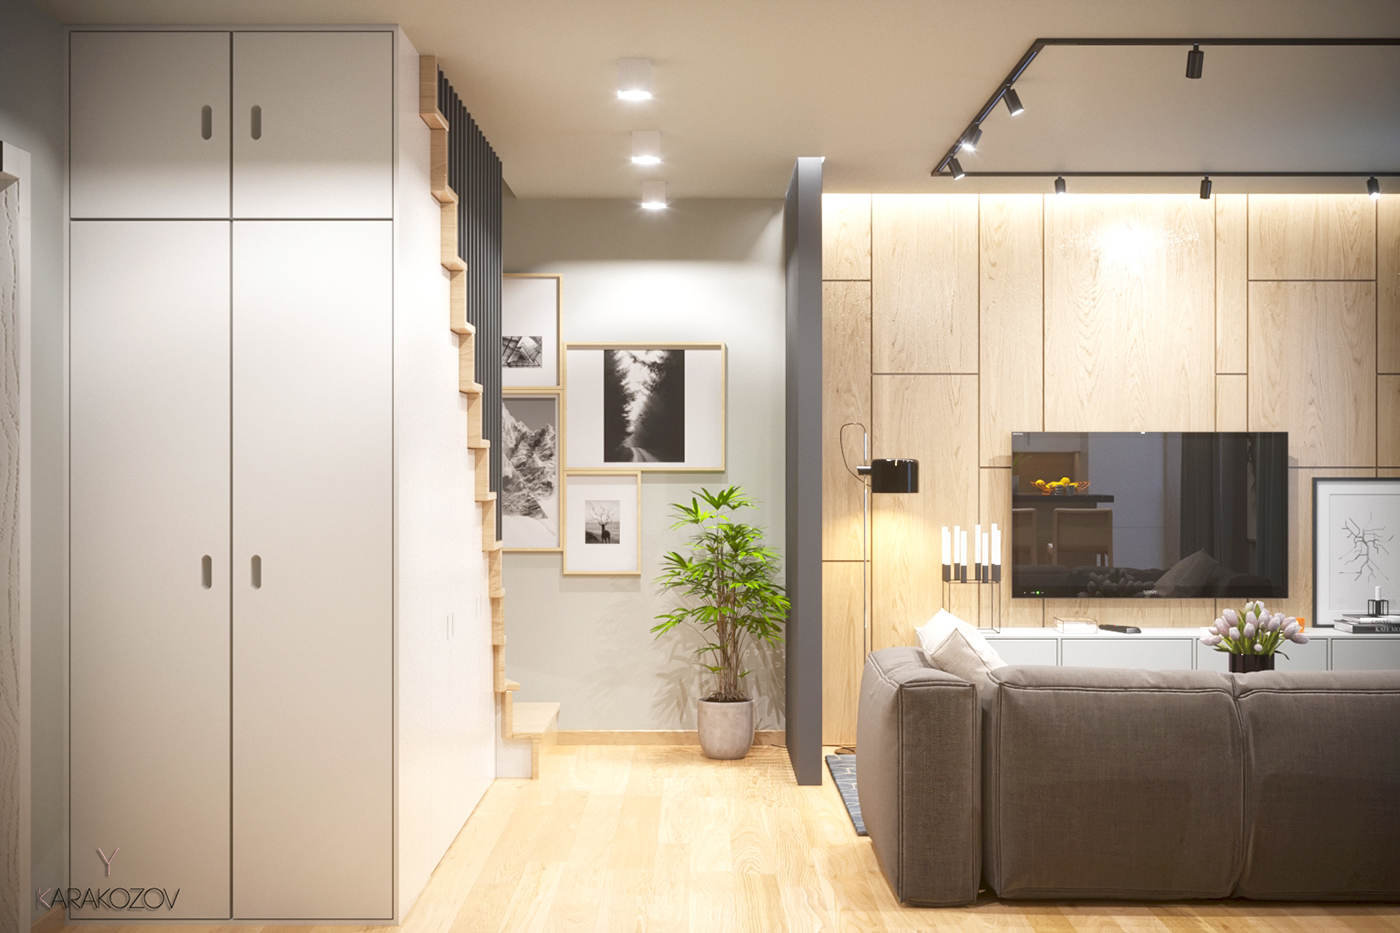 apartment Livig Room duplex kiev ukraine kitchen stair wood modern design